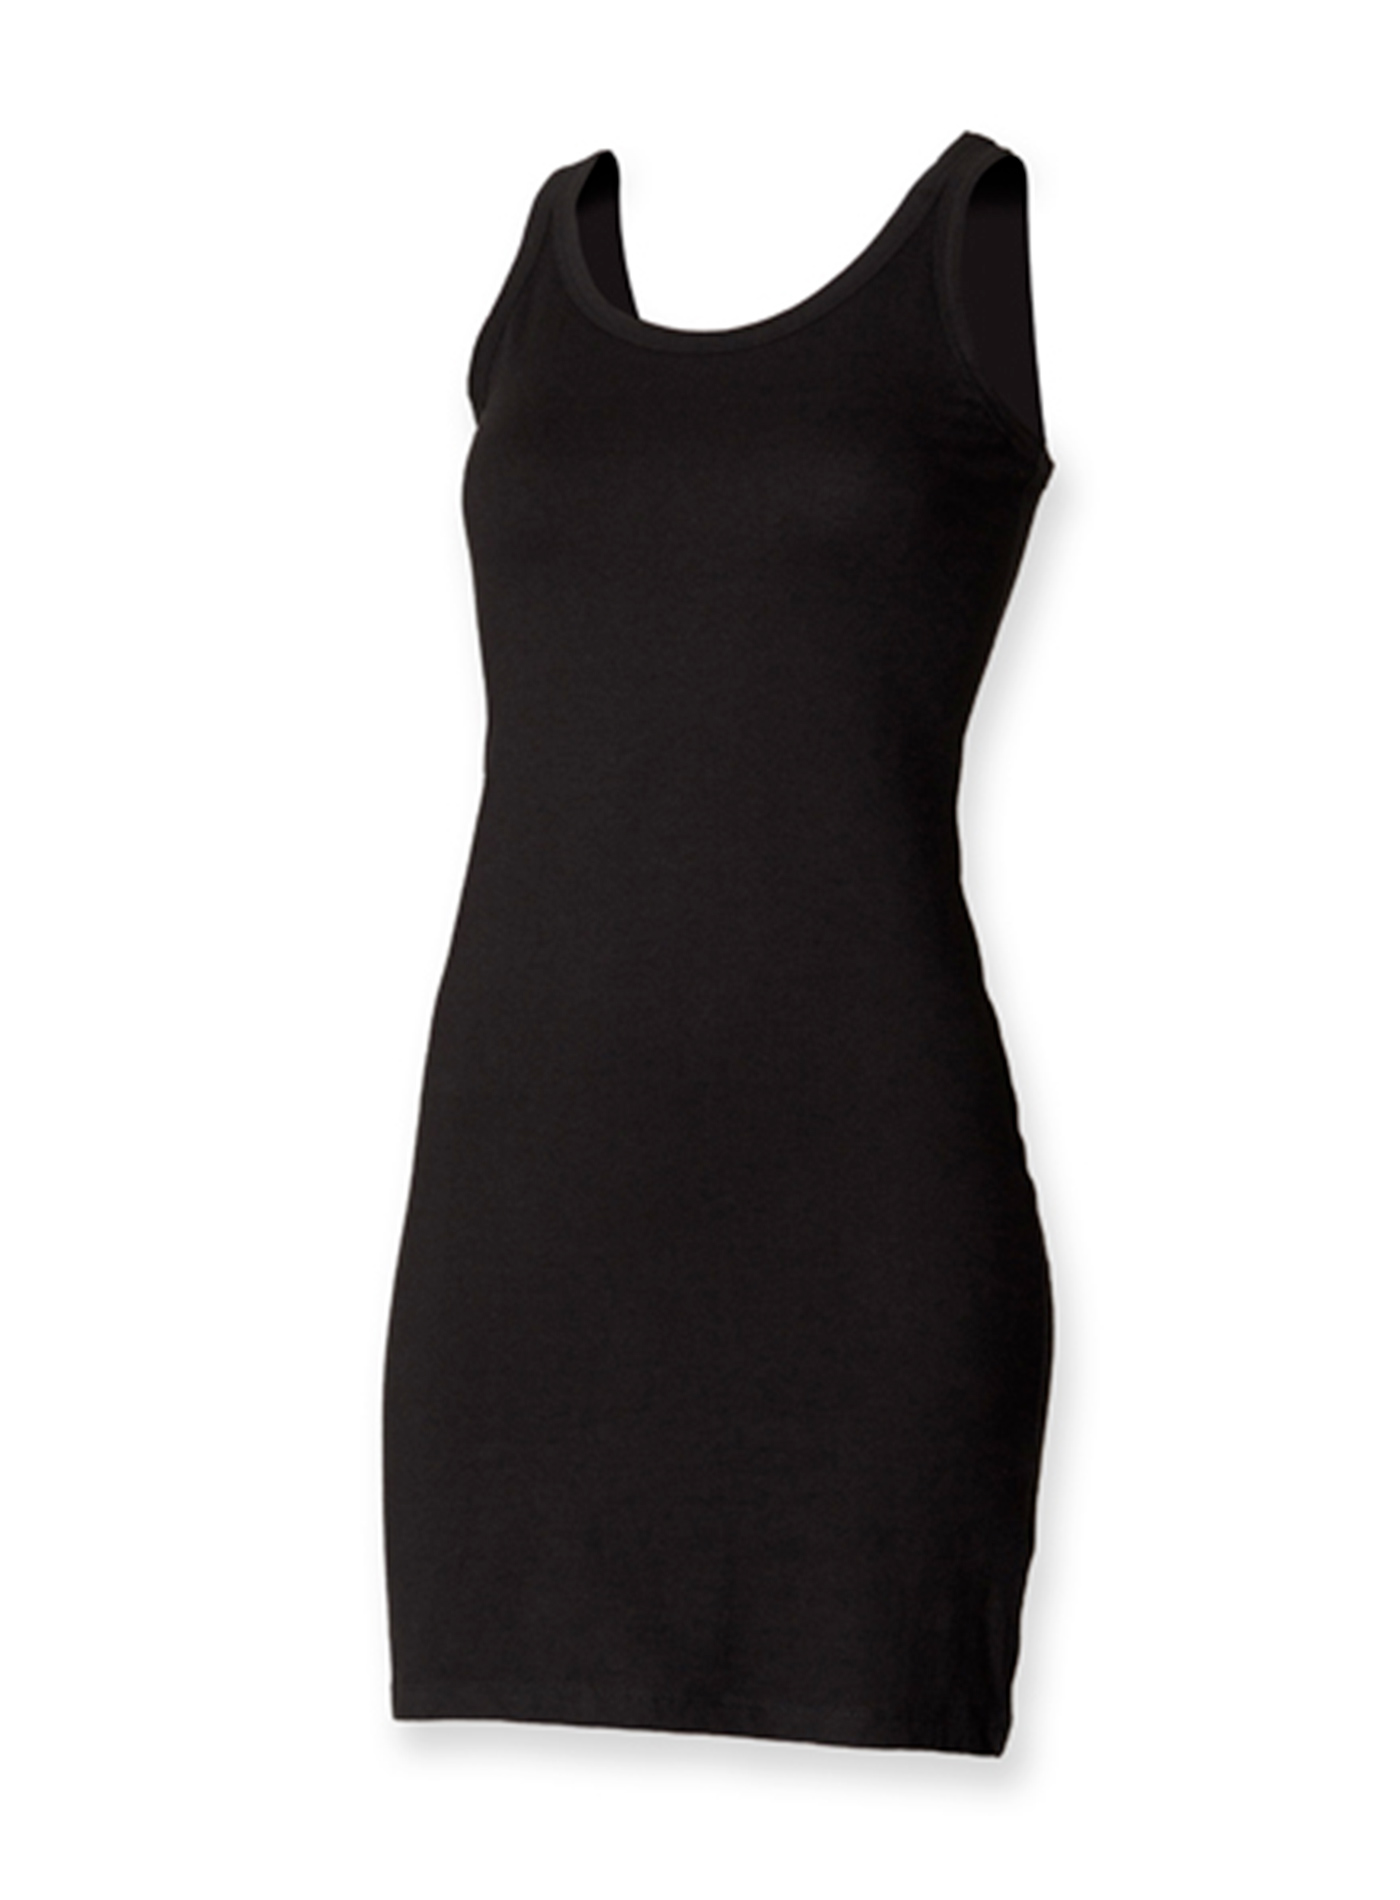 Dámské strečové šaty Skinnifit - černá M